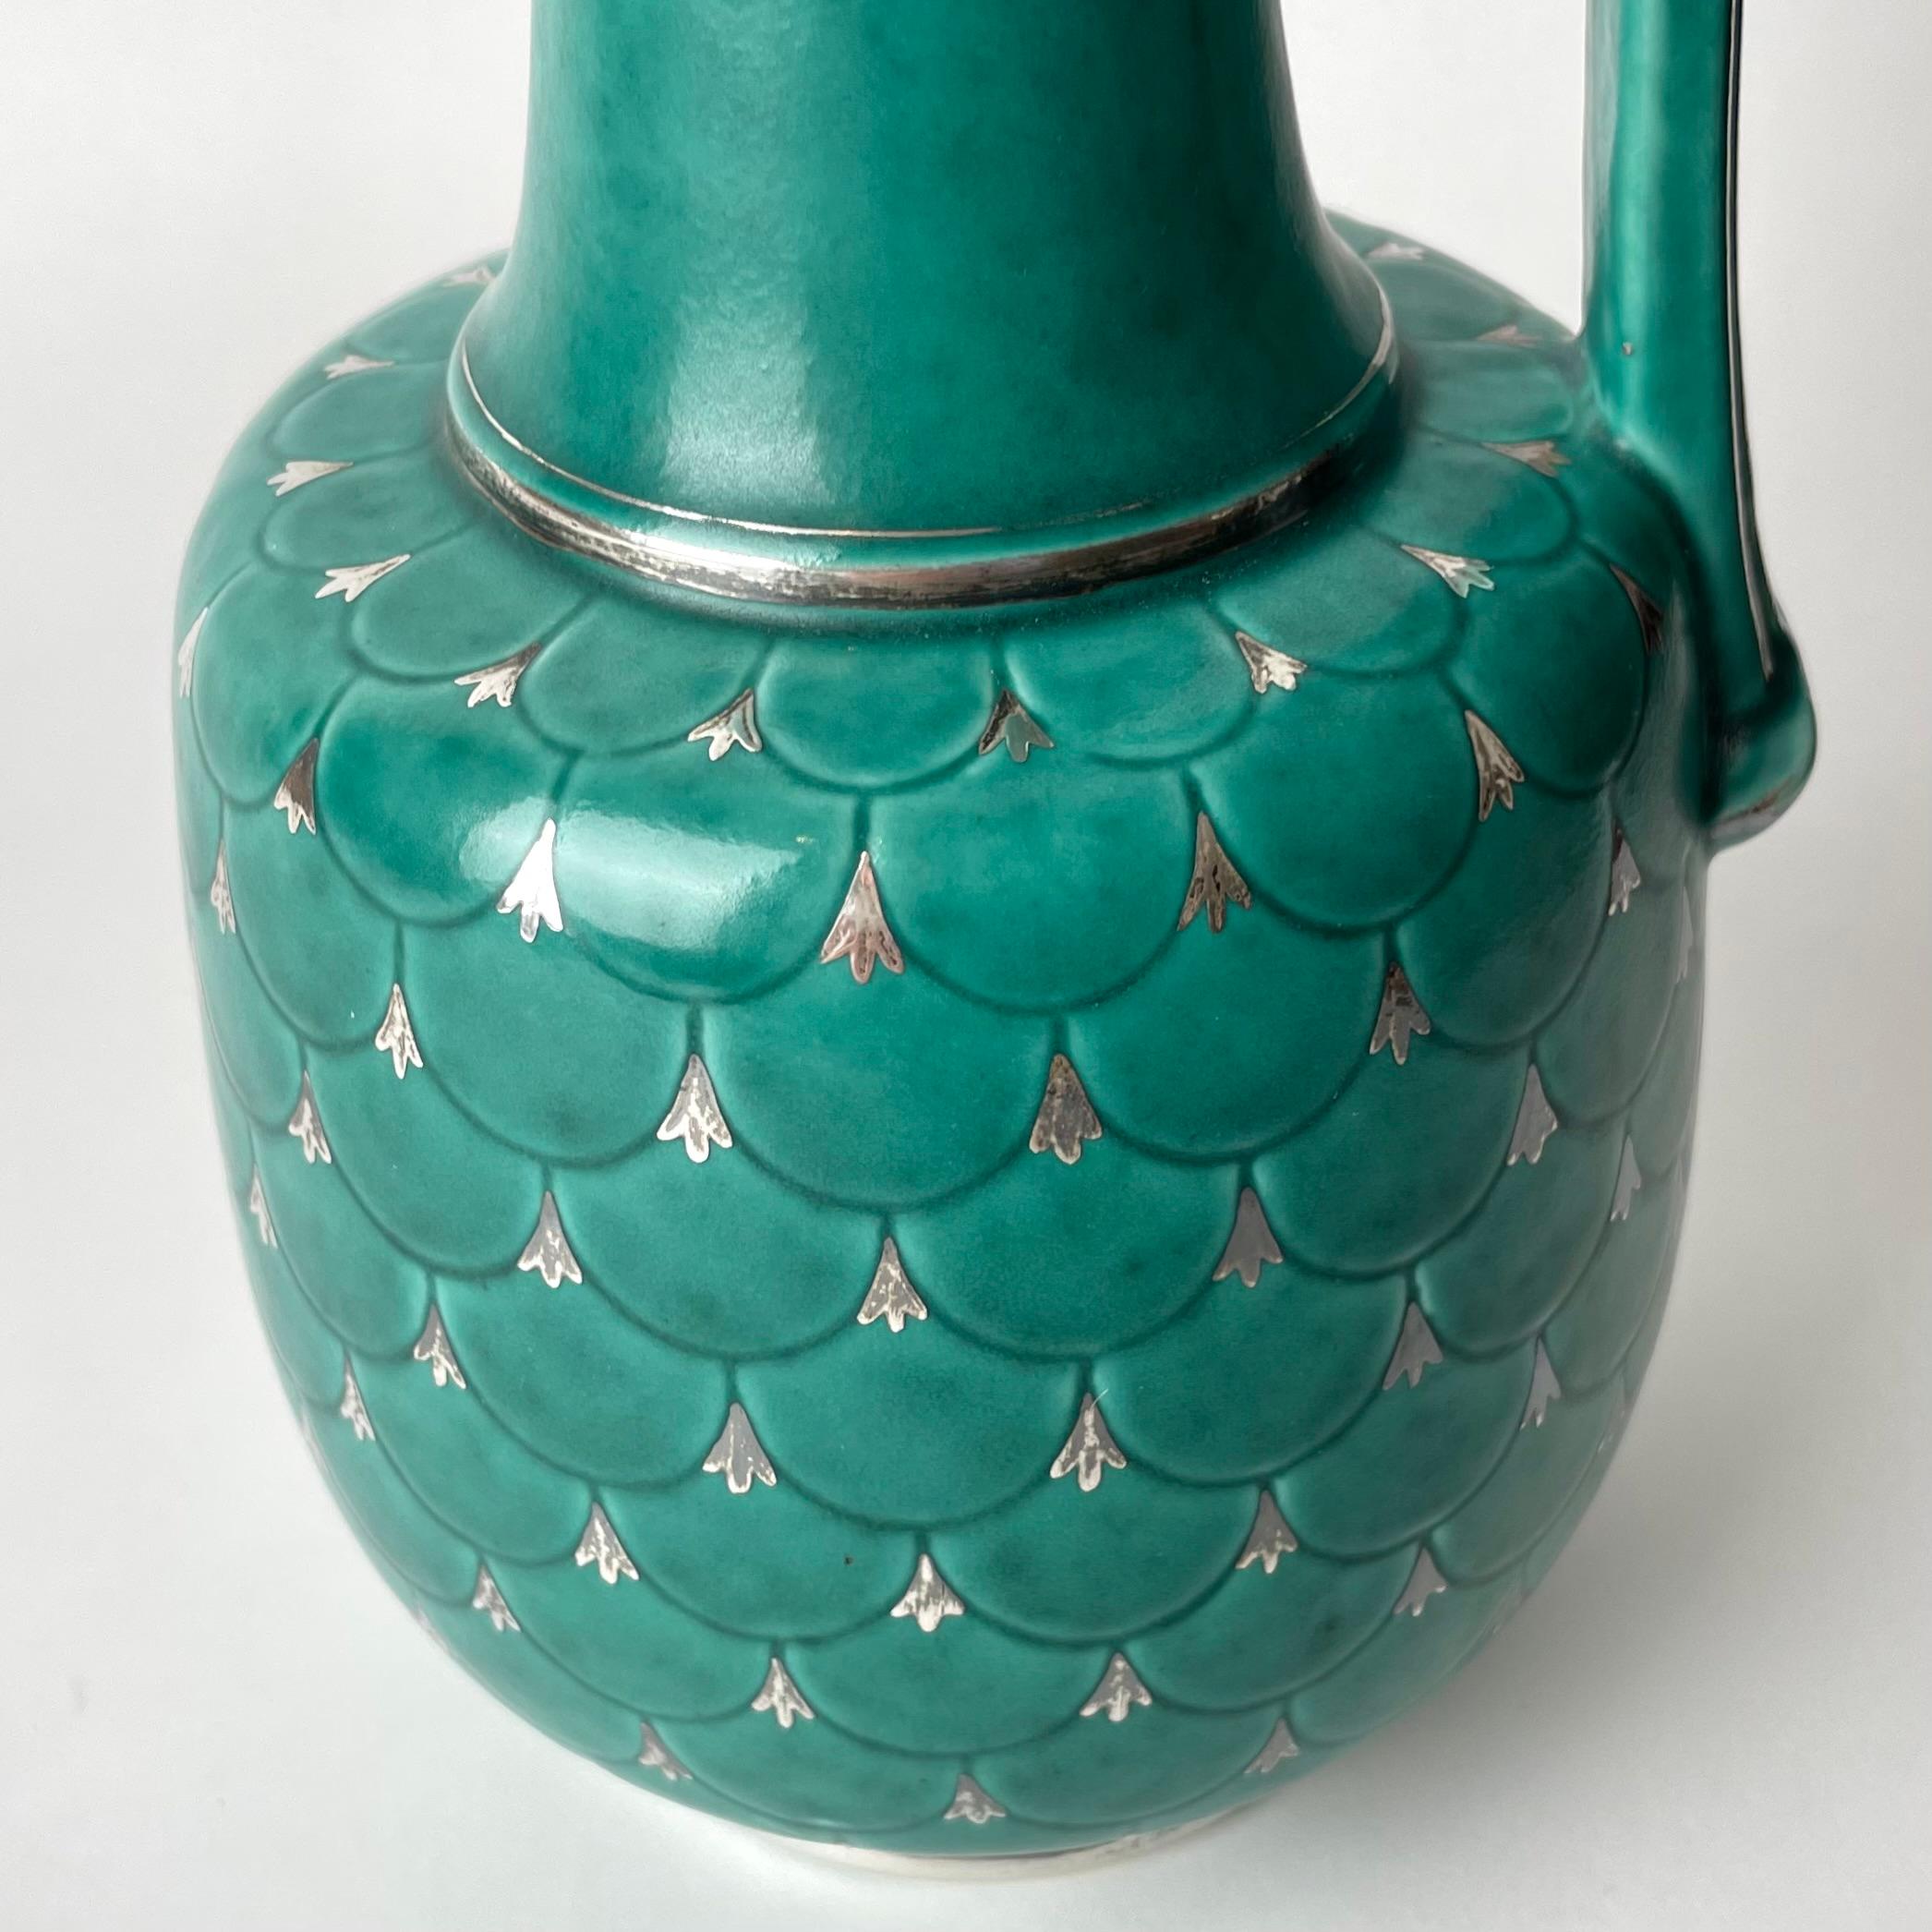 Swedish Grace Ceramic Handle Vase, Argenta designed by Wilhelm Kåge 1930s-1940s For Sale 3